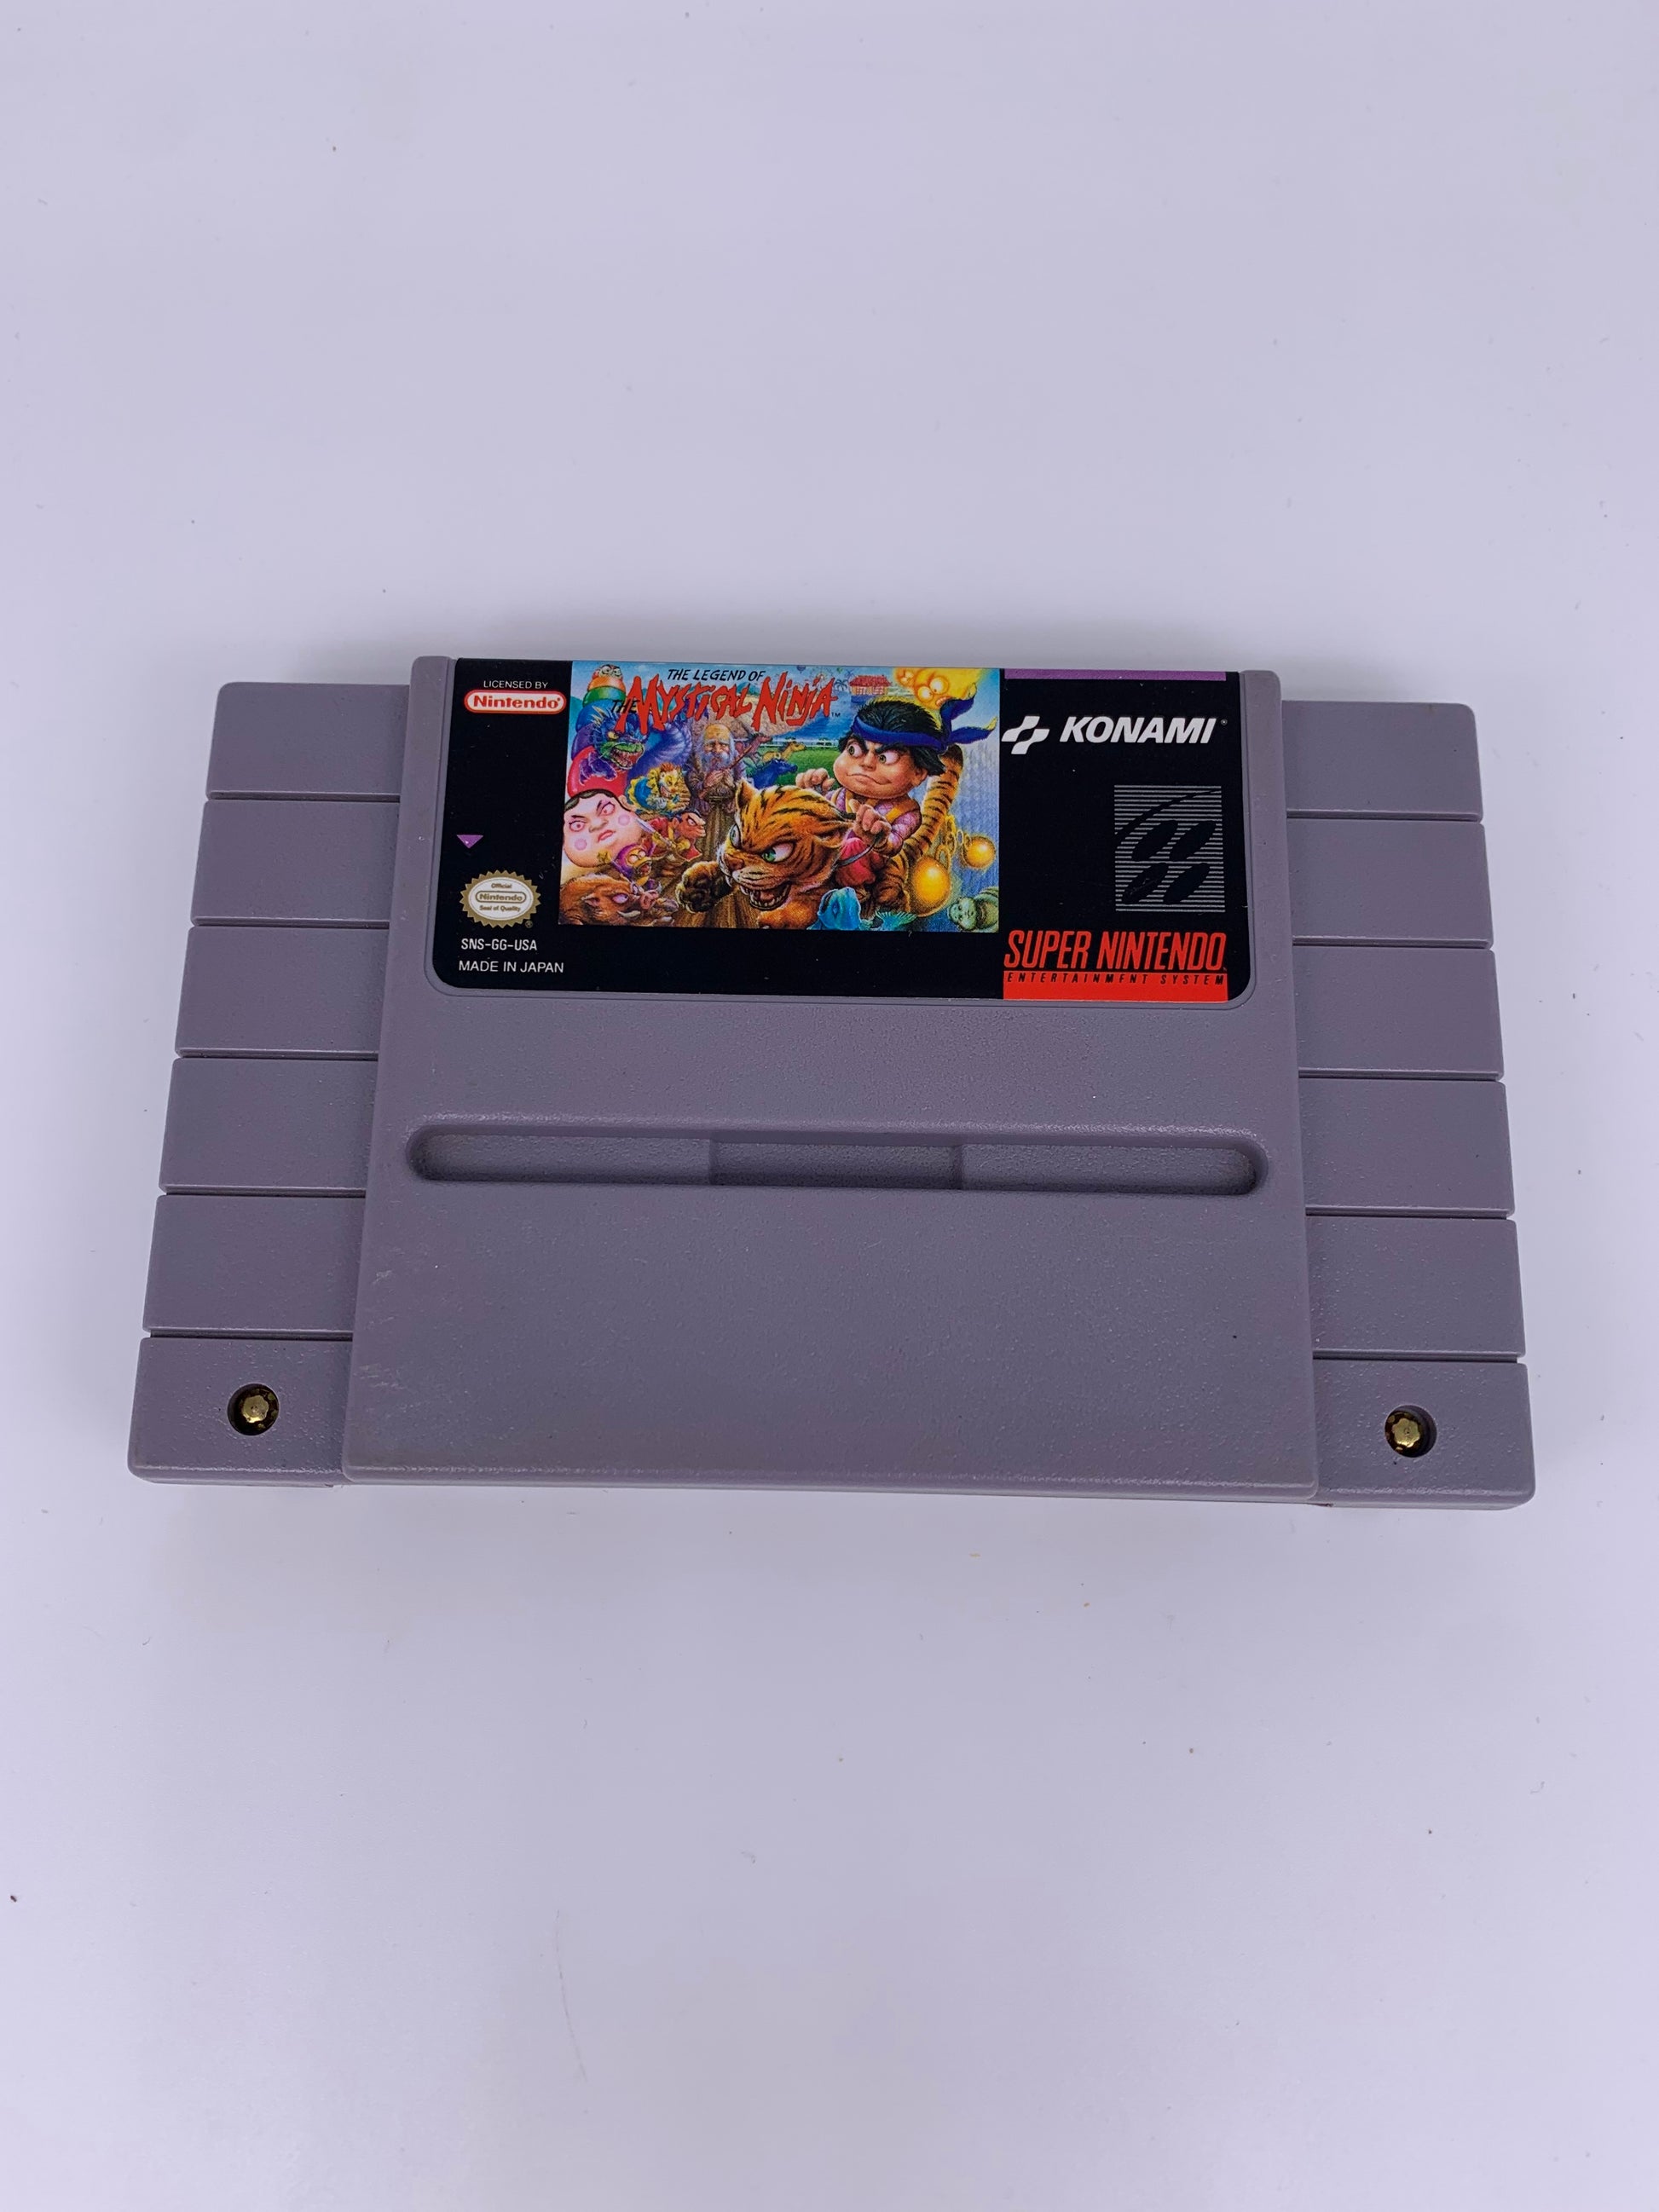 PiXEL-RETRO.COM : SUPER NINTENDO NES (SNES) GAME NTSC THE LEGEND OF MYSTICAL NINJA